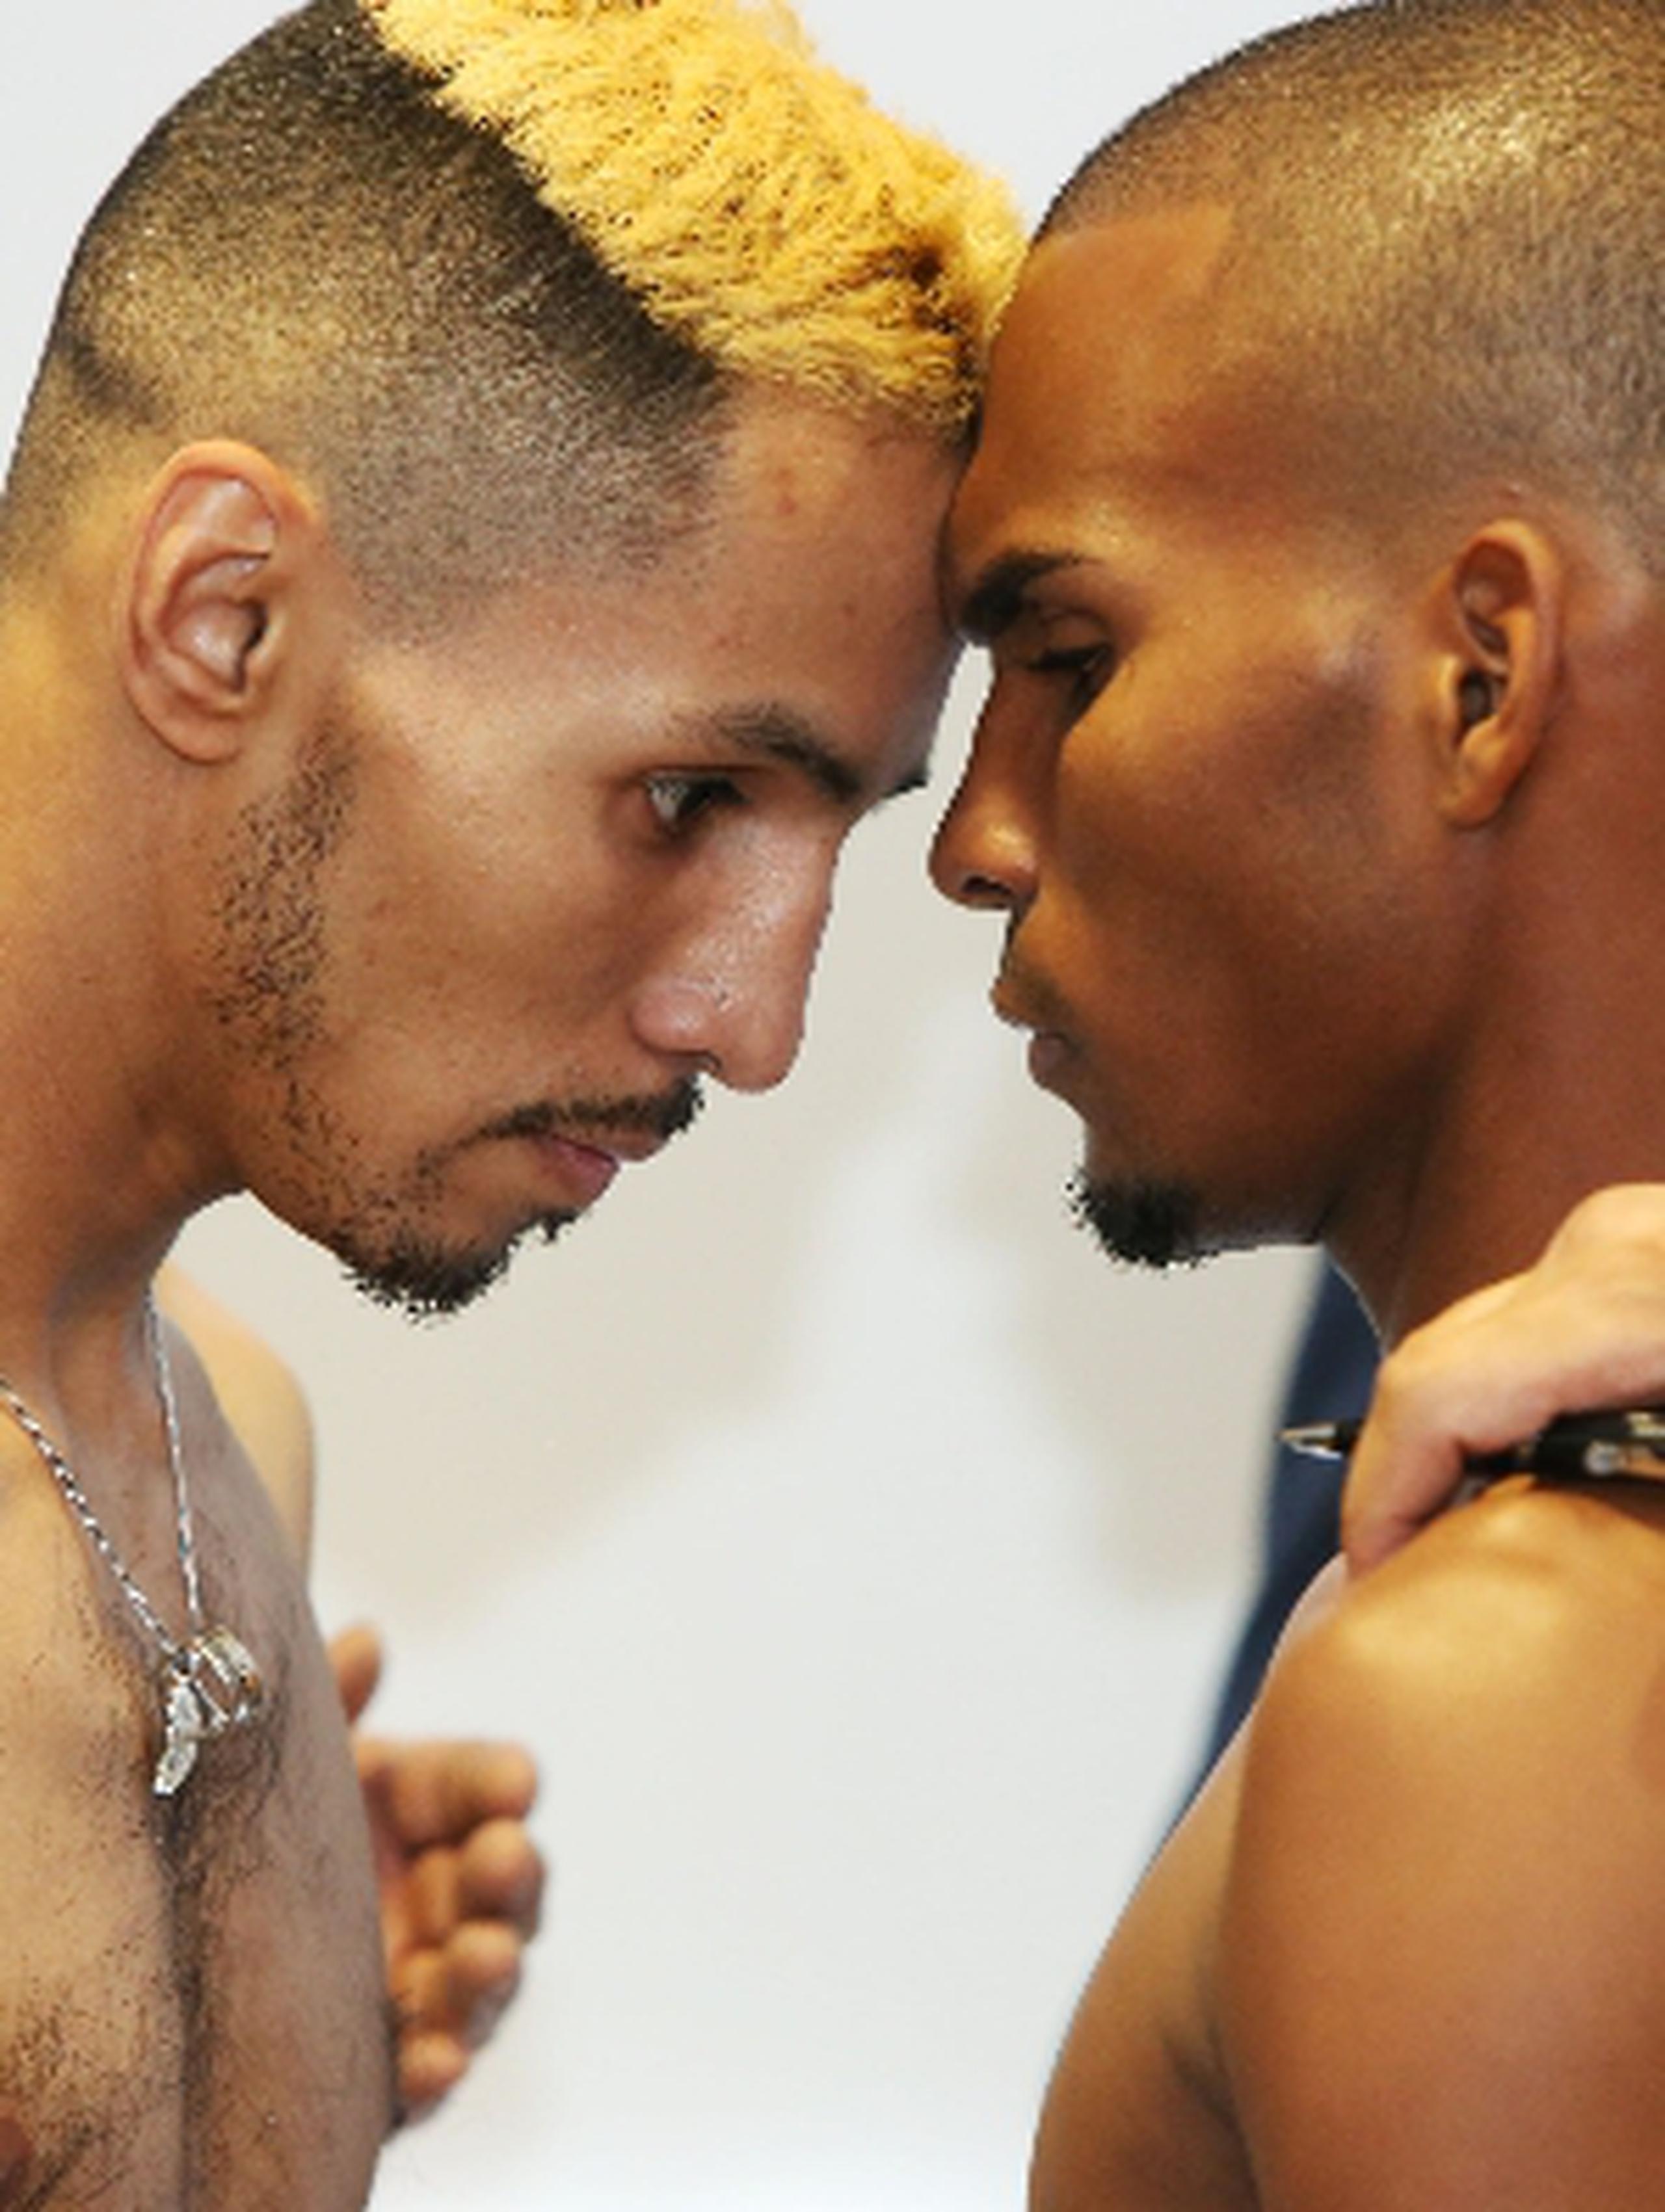 Jonathan “Bomba” González y Joseph Ríos recurrieron a la estrategia de intimidación en el pesaje. Cortesía PR Best Boxing / Joel Colón